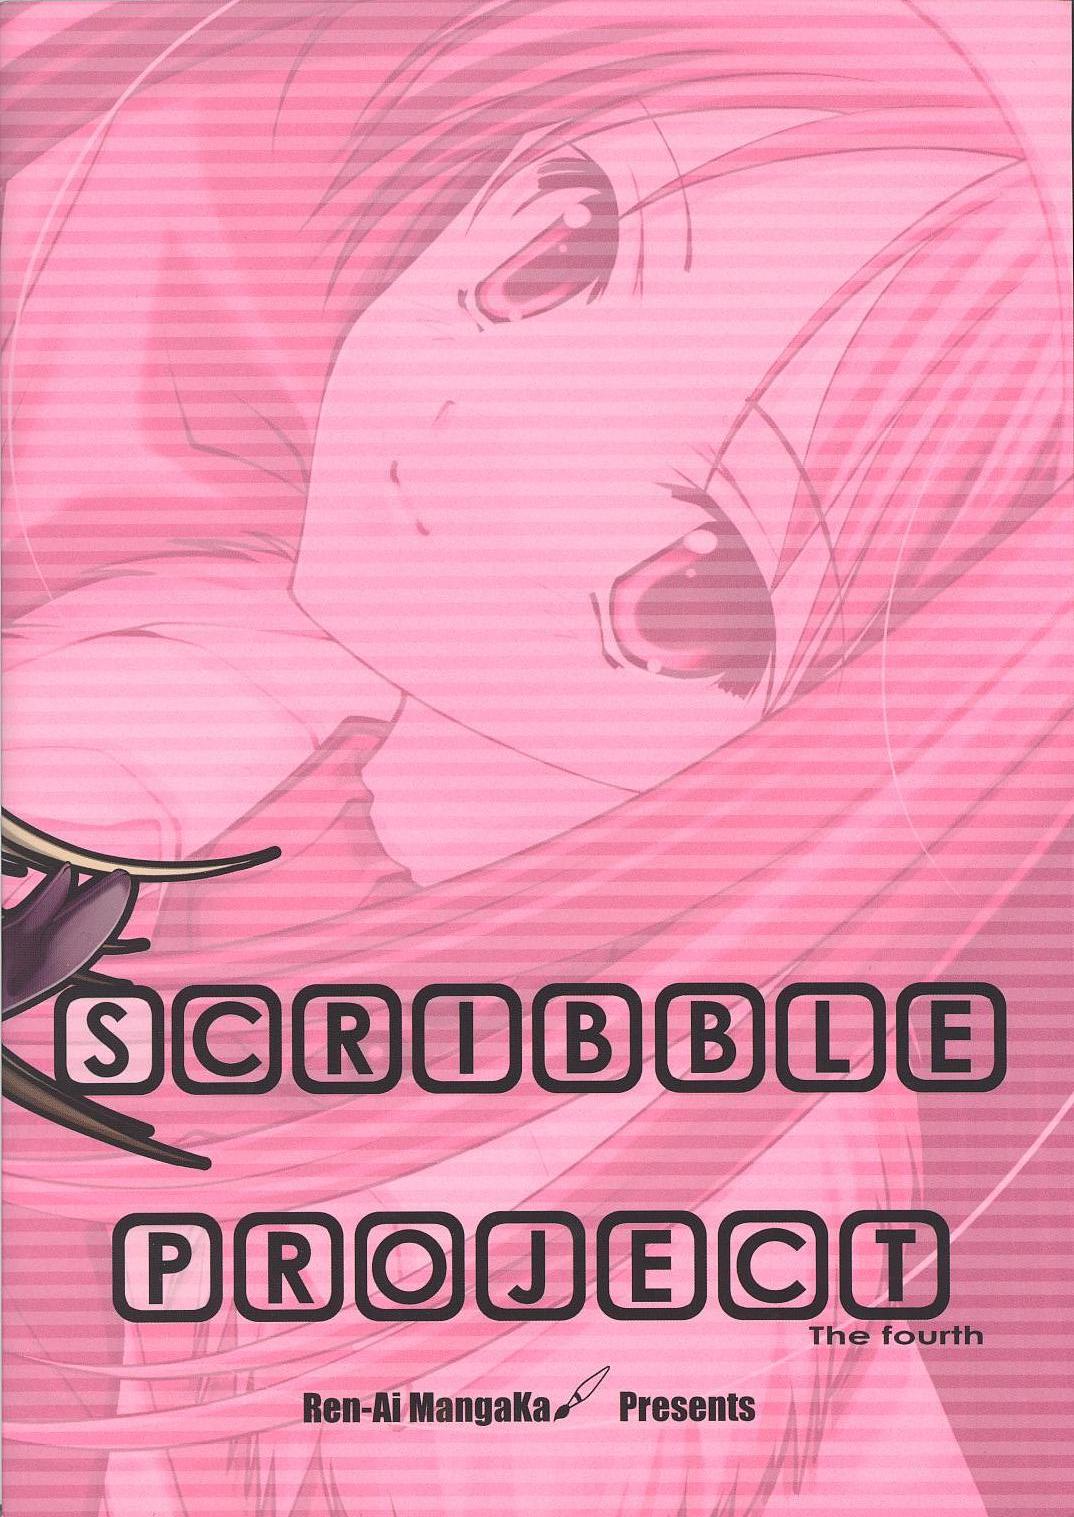 (C65)[恋愛漫画家 (鳴瀬ひろふみ)] Scribble Project 4 (月姫)